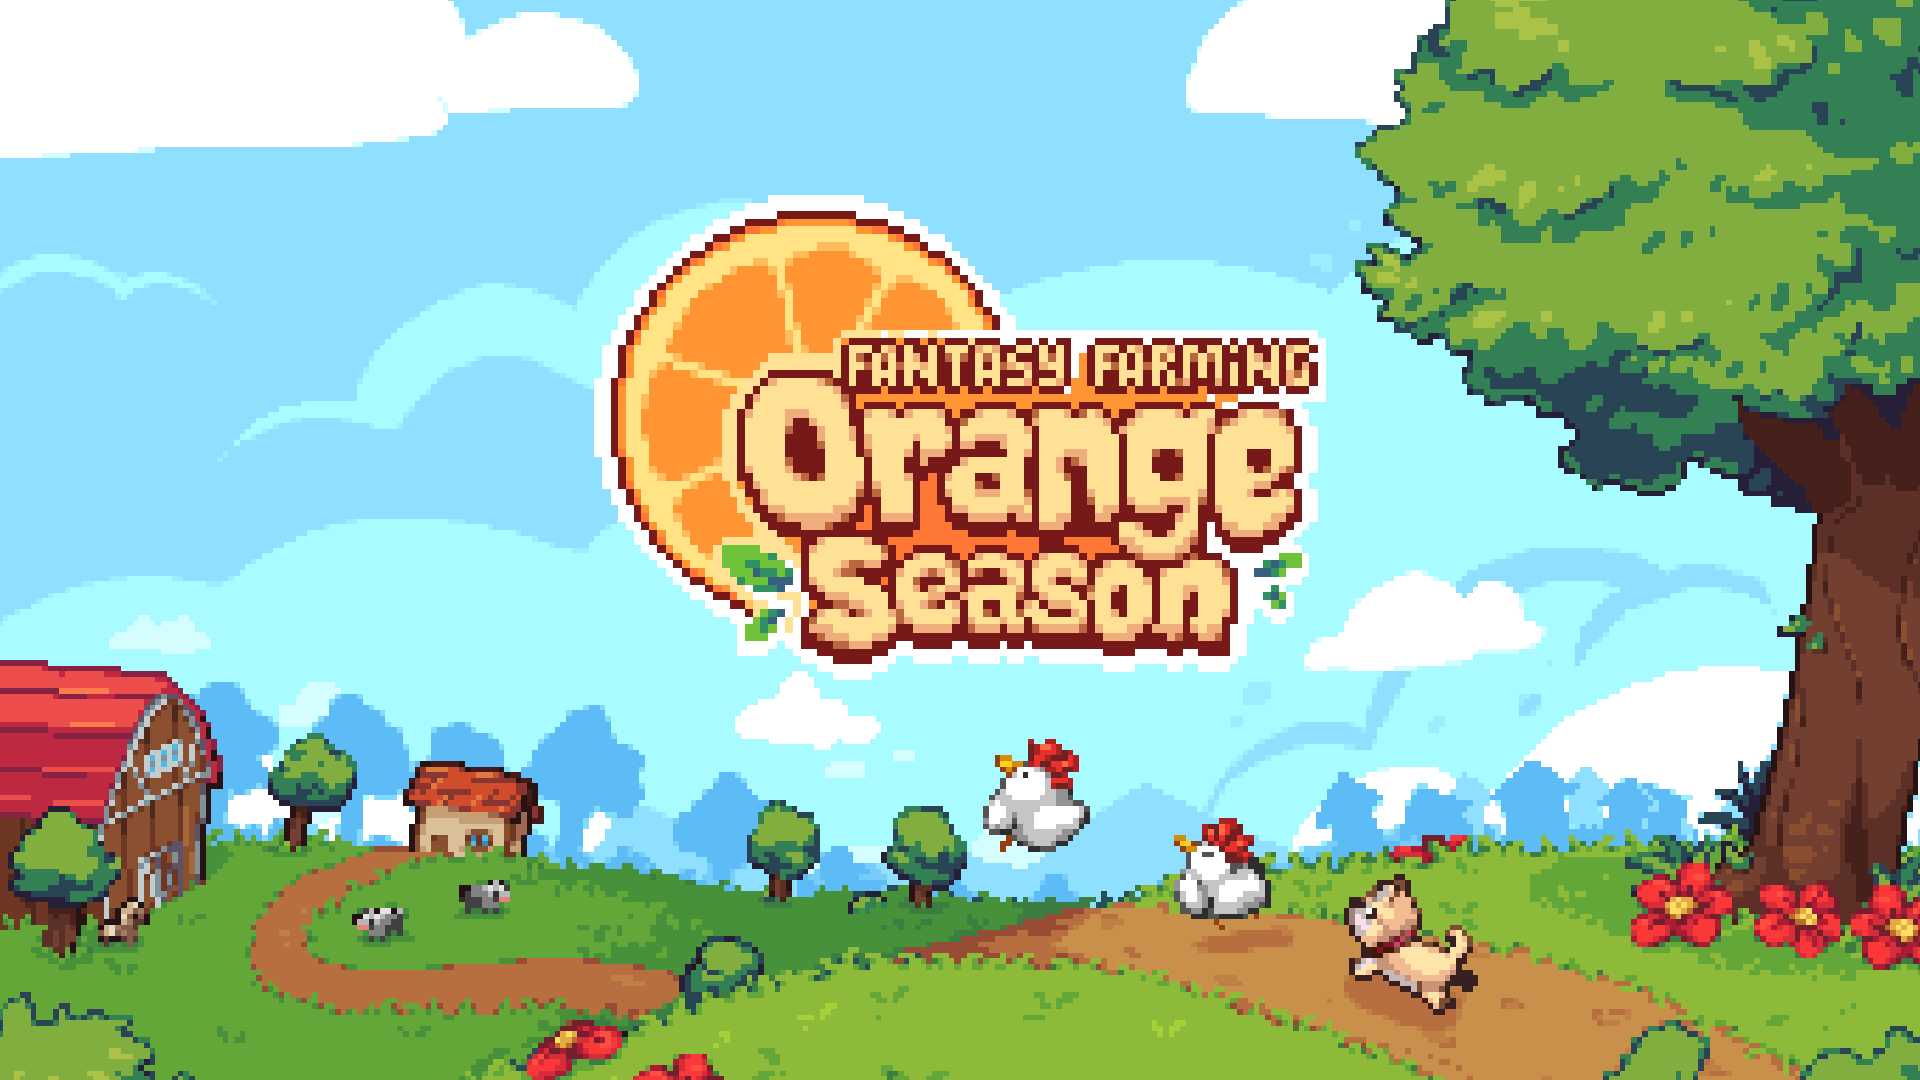 Fantasy farming: orange season - jogo recebe grande atualização | 9b48f523 a8e5 4e60 bd26 94ca3df1aaeb | pubg notícias